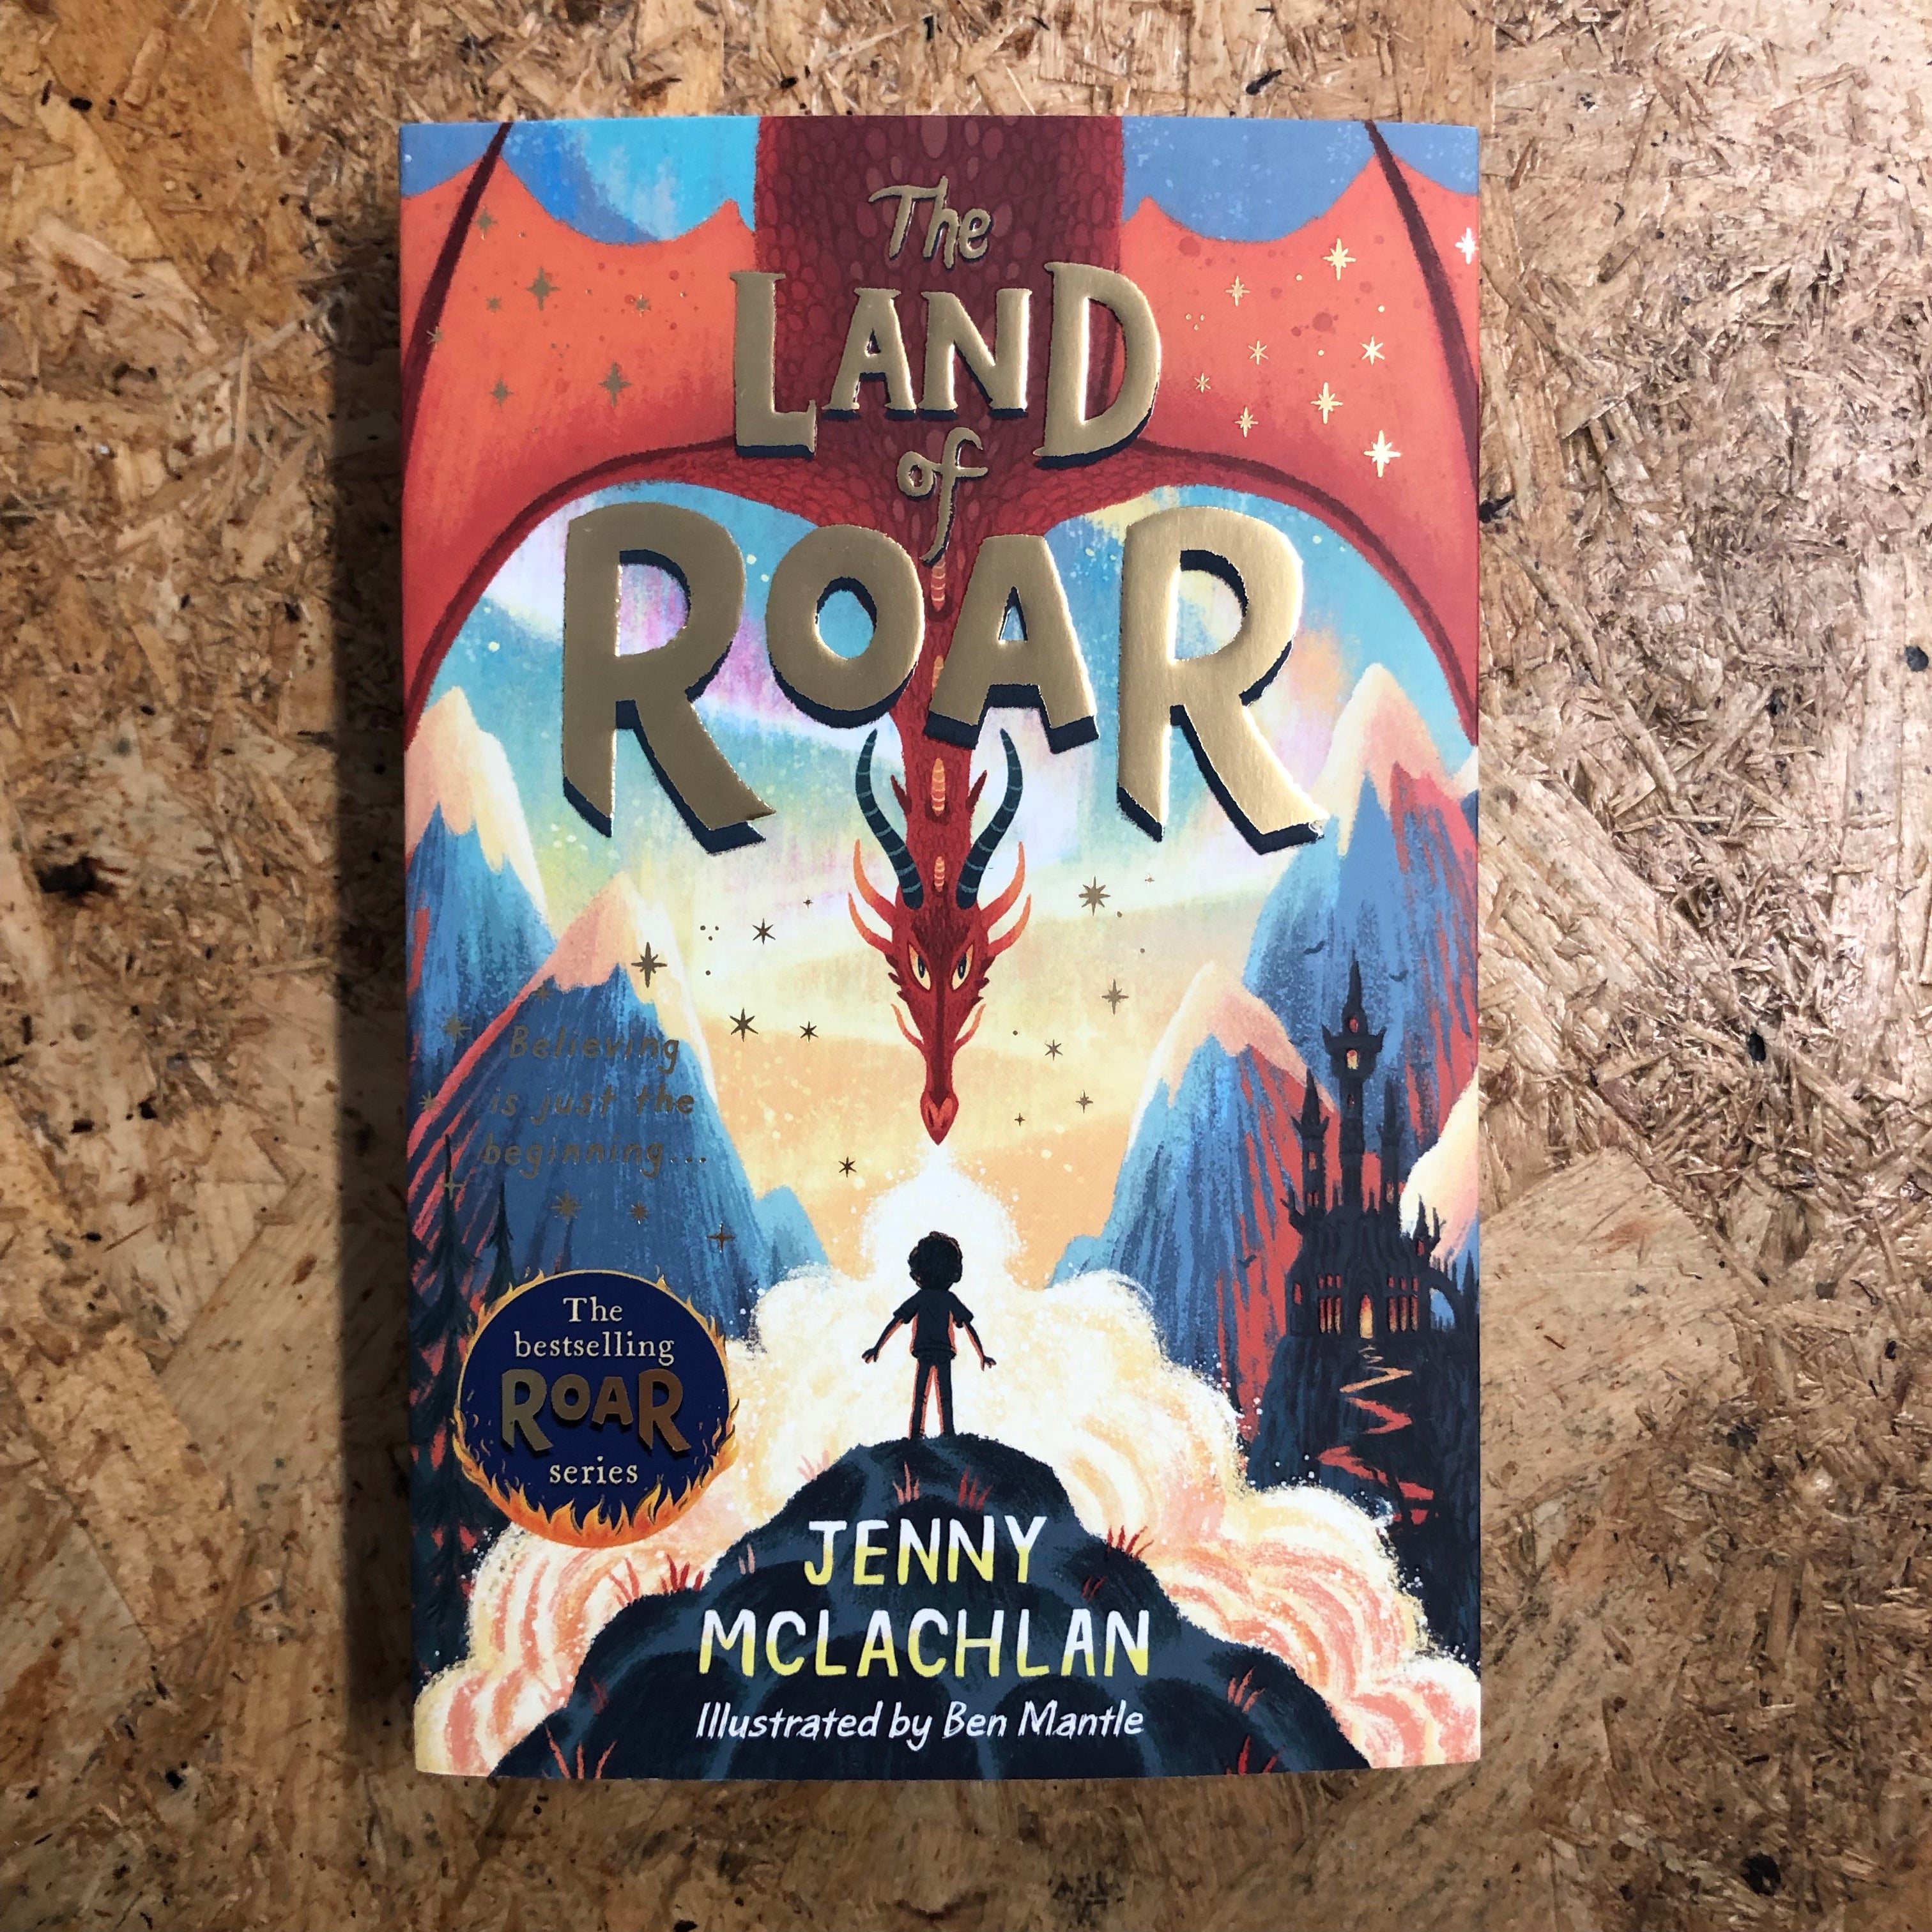 The Battle for Roar (The Land of Roar by Jenny McLachlan